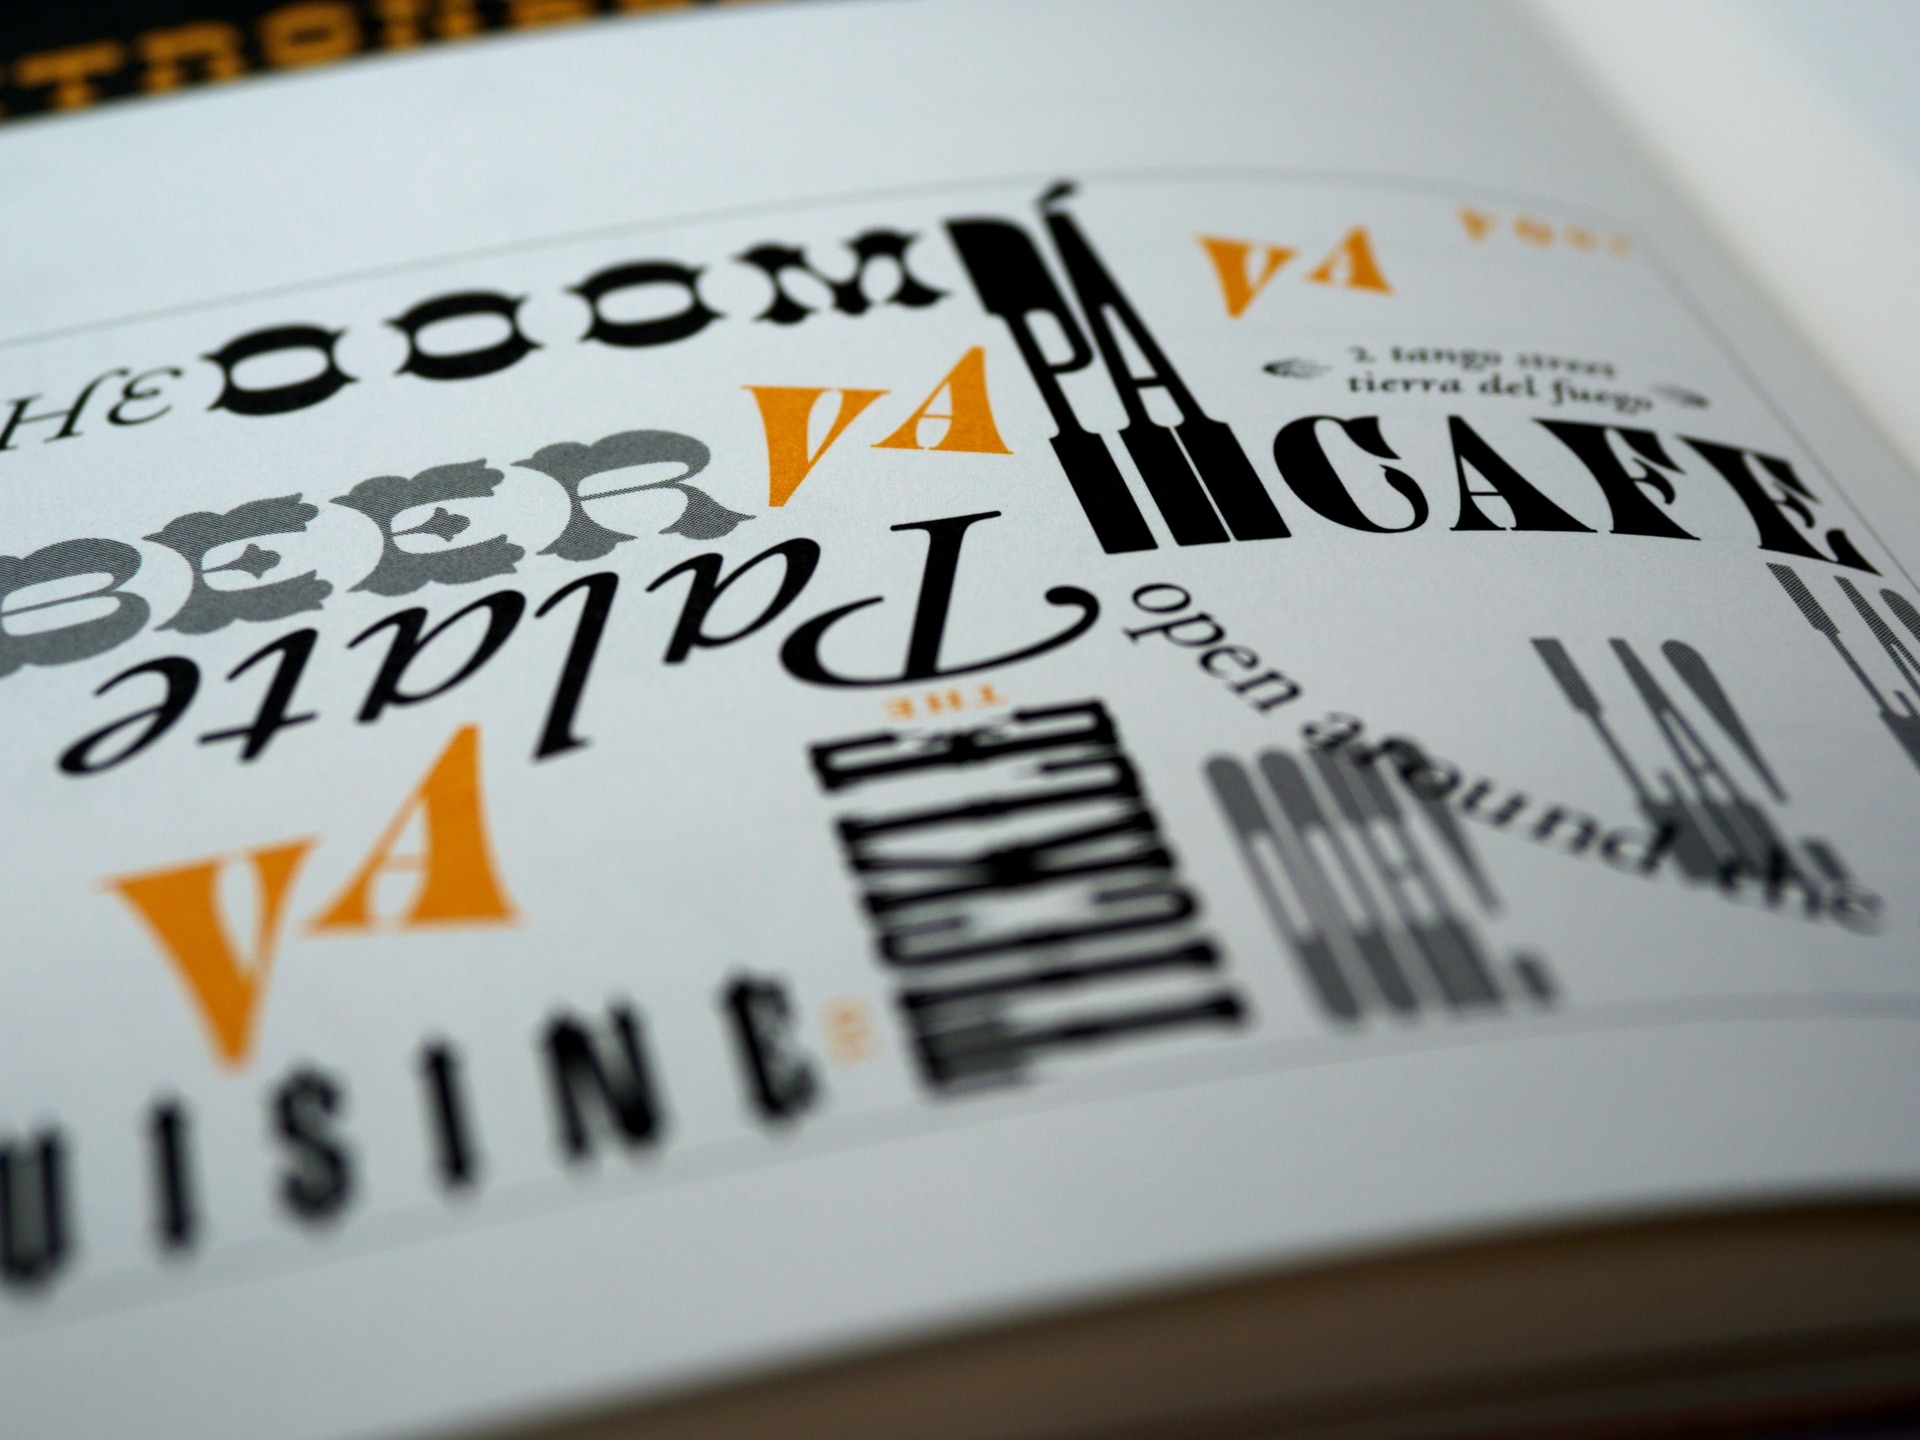 Différentes typographies imprimées sur un livre.